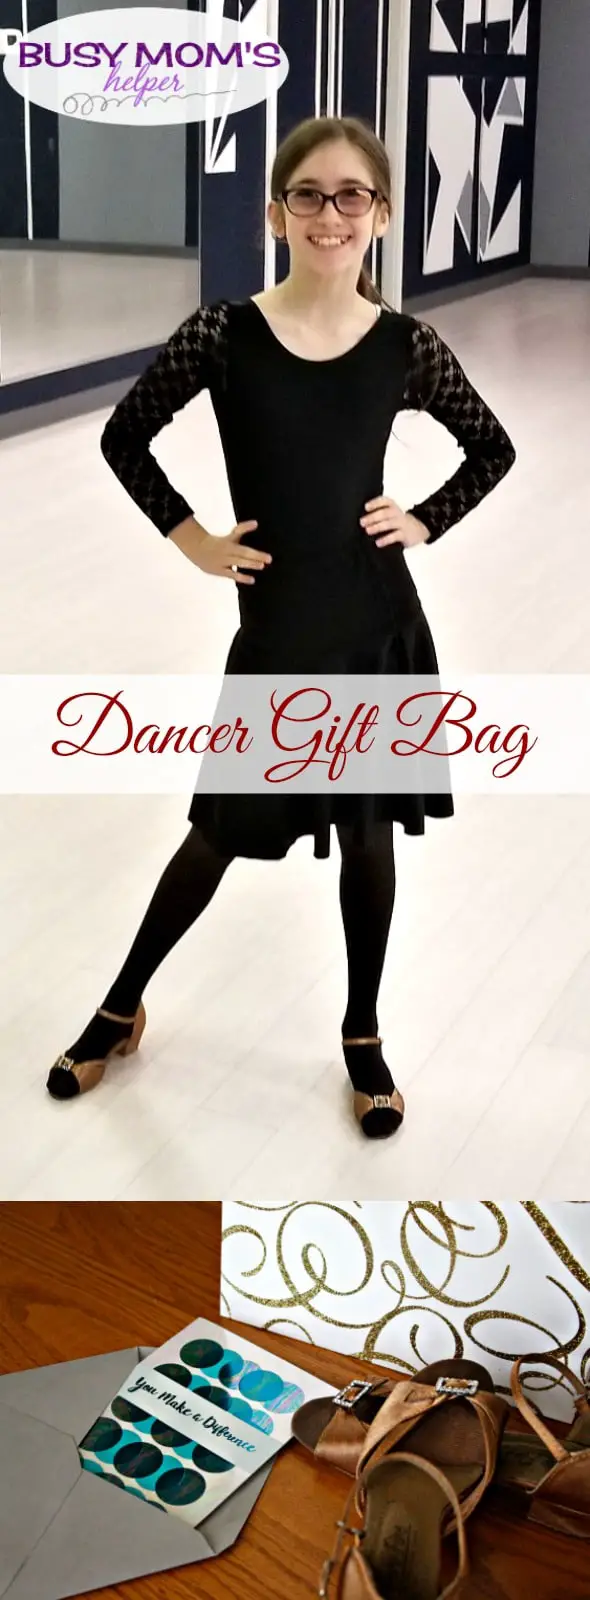 Dancer Gift Bag #ad #CelebrateAllSummer